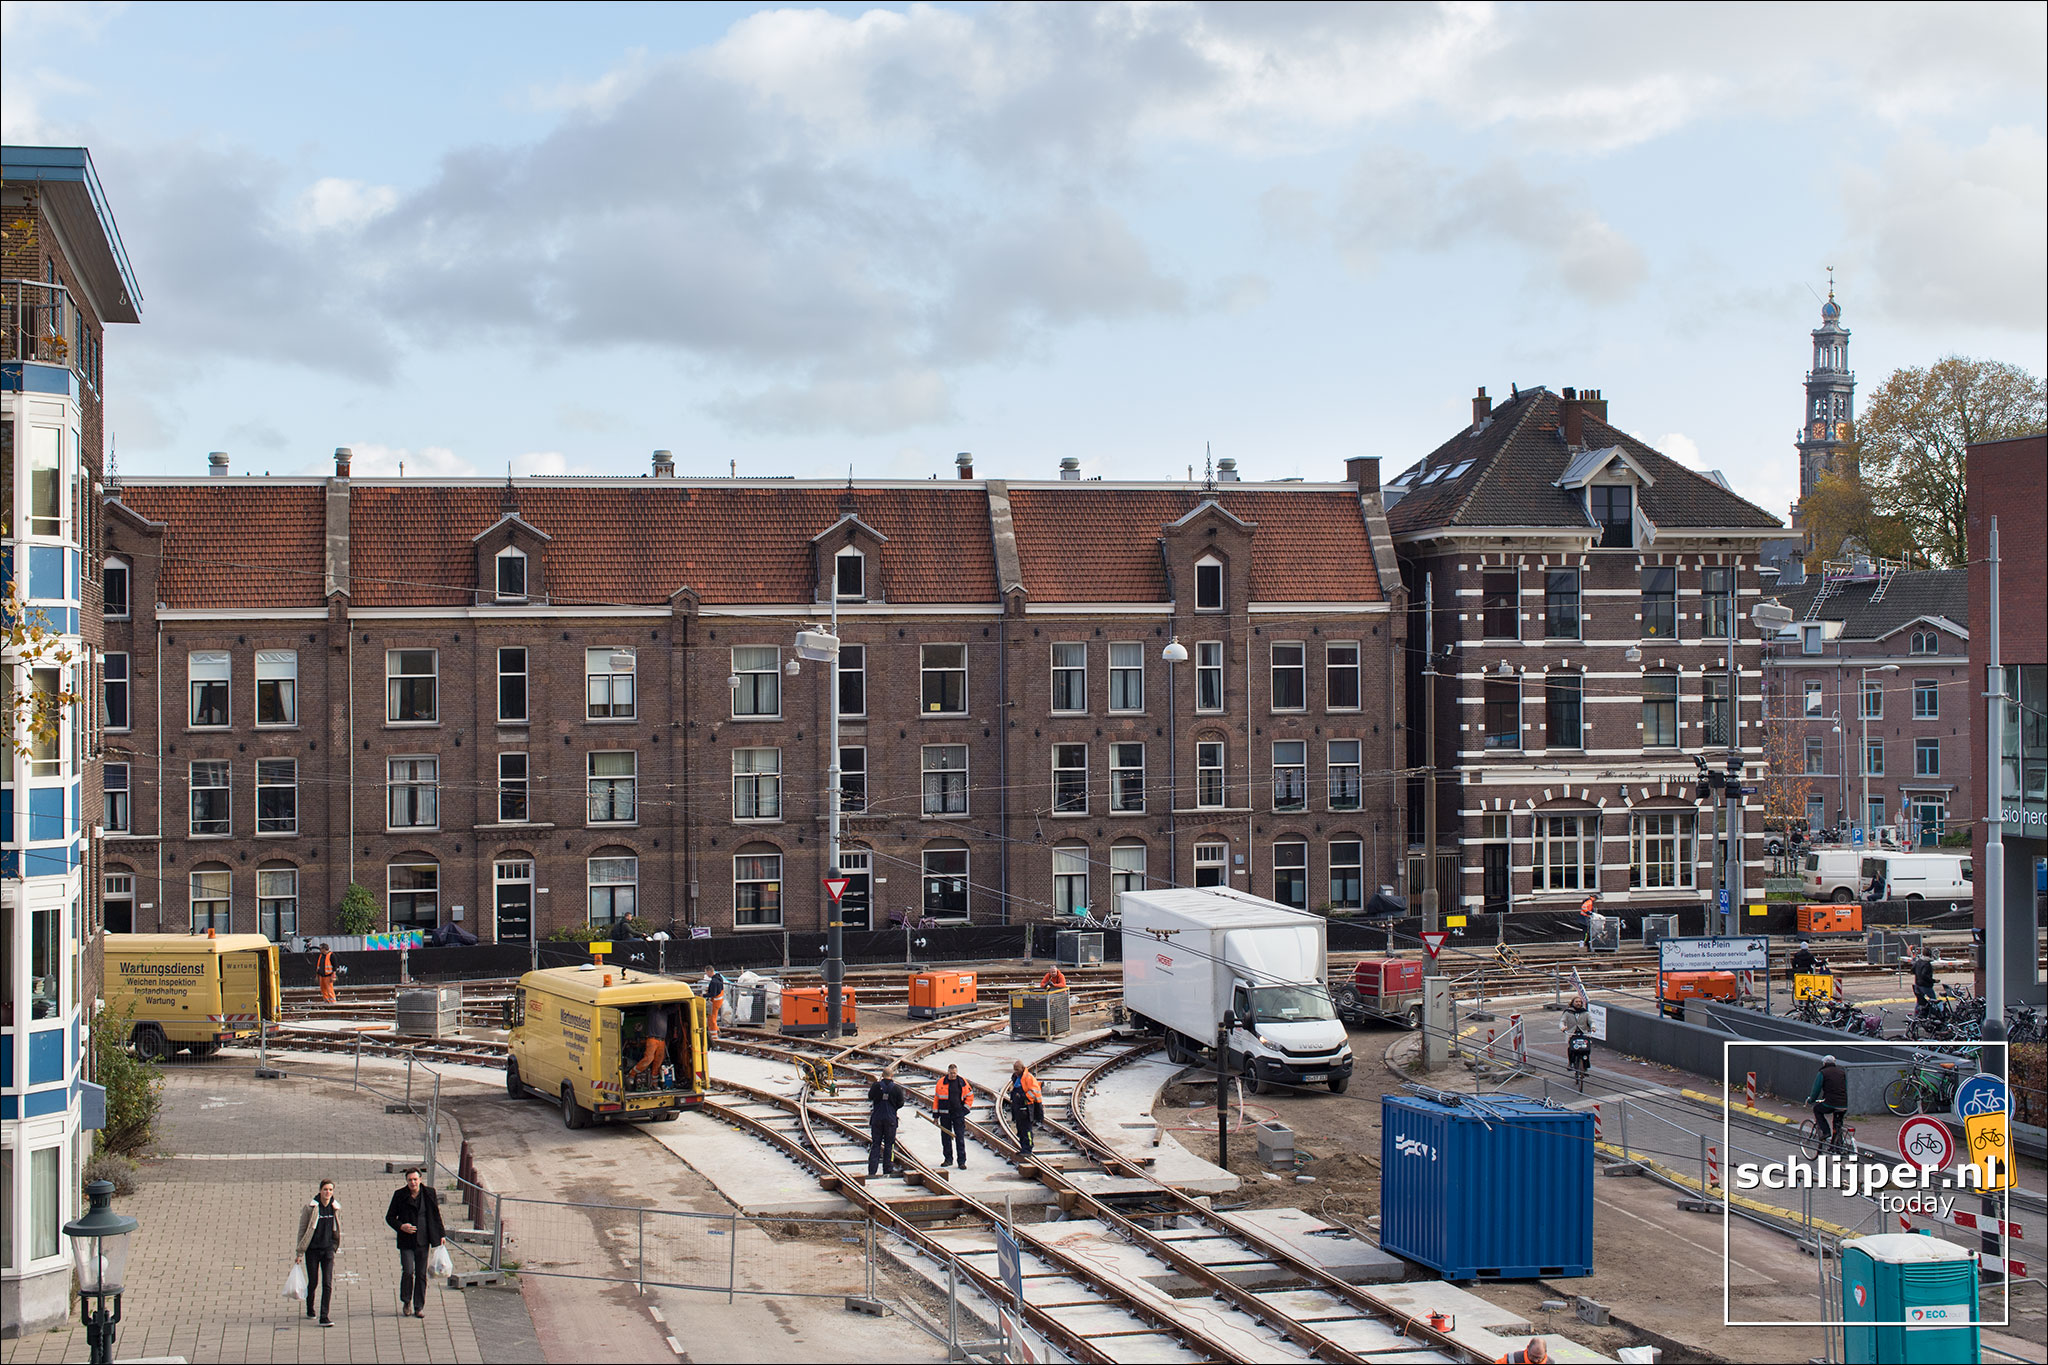 Thomas Schlijper on X: Harry Banninkstraat, Oosterdokskade 07.11.2020  10:57 #Amsterdam @mediamarkt_nl  / X